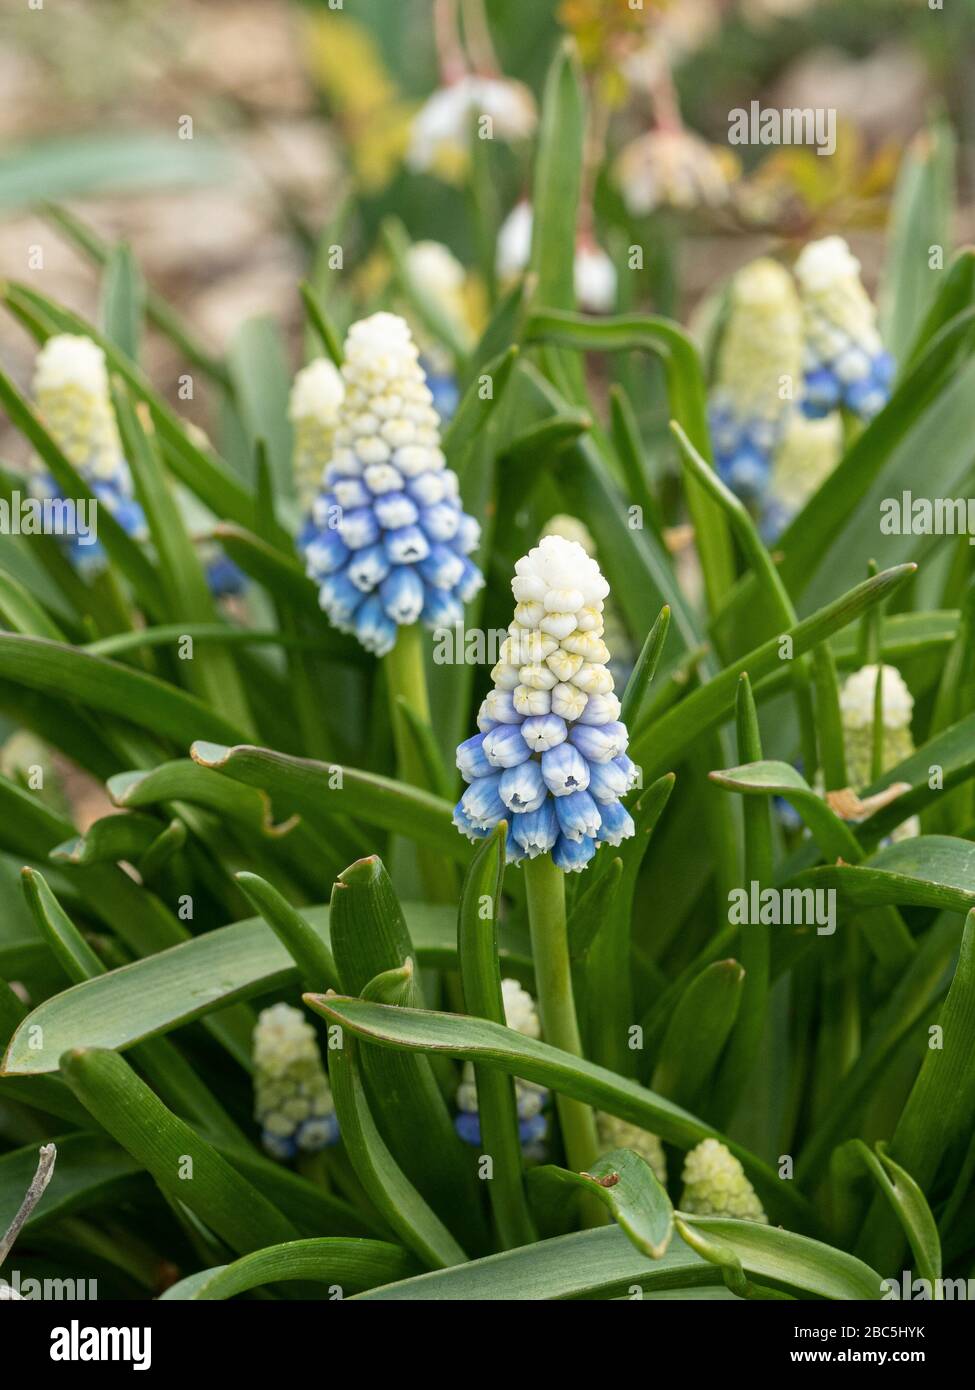 Eine Nahaufnahme einer Gruppe weißer, bleichender bis blauer Blumenspitzen der Traubenhyazinthe Muscari armeniacum 'Mountain Lady' Stockfoto